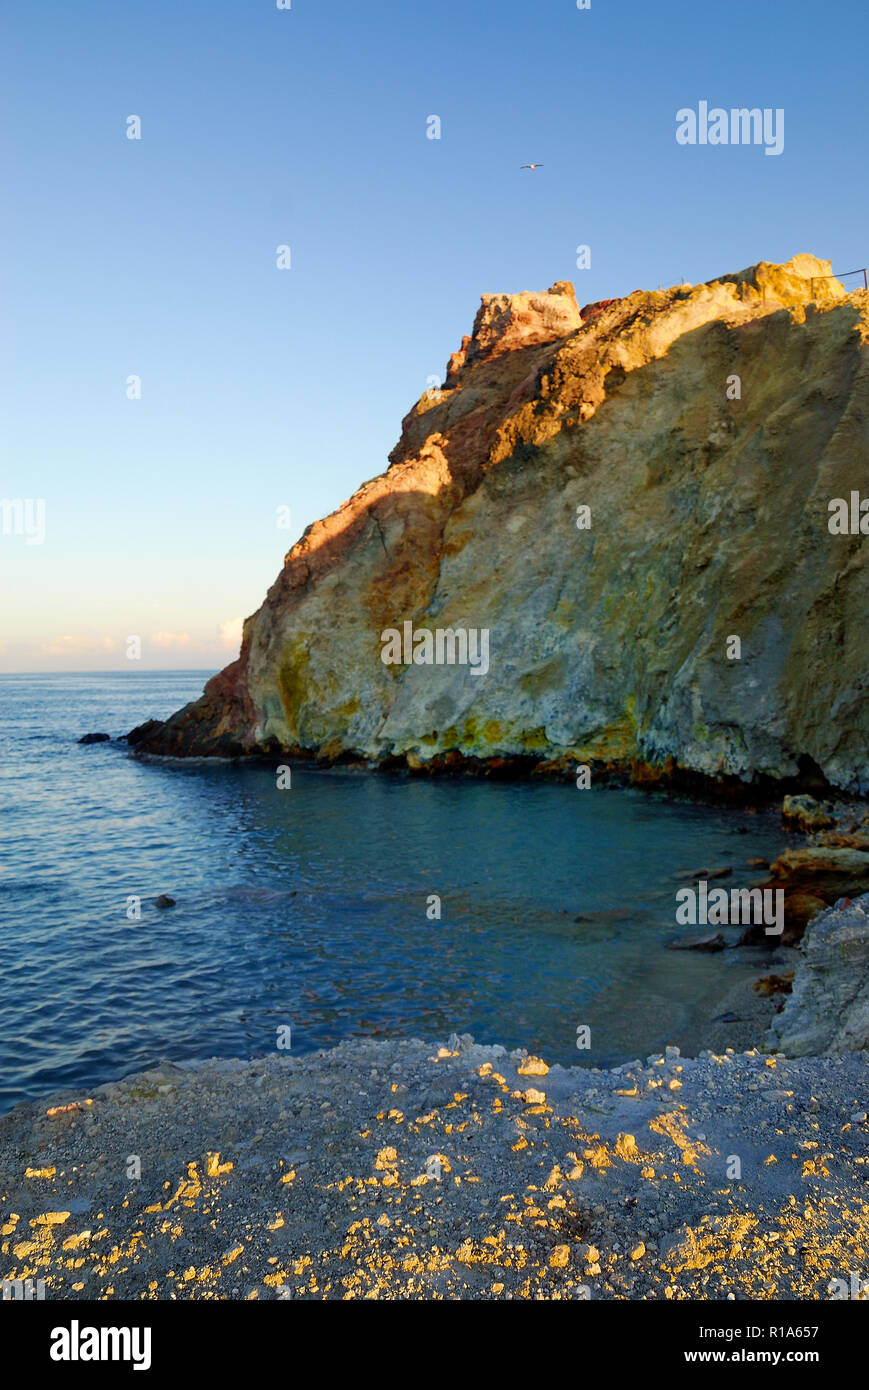 Äolische Inseln, Sizilien, Italien. Insel Vulcano, das Meer von heißen Quellen die "Pozza dei Fanghi'. In einigen Orten das Meer hohe Temperaturen durch die zahlreichen heißen Quellen erreicht. Stockfoto